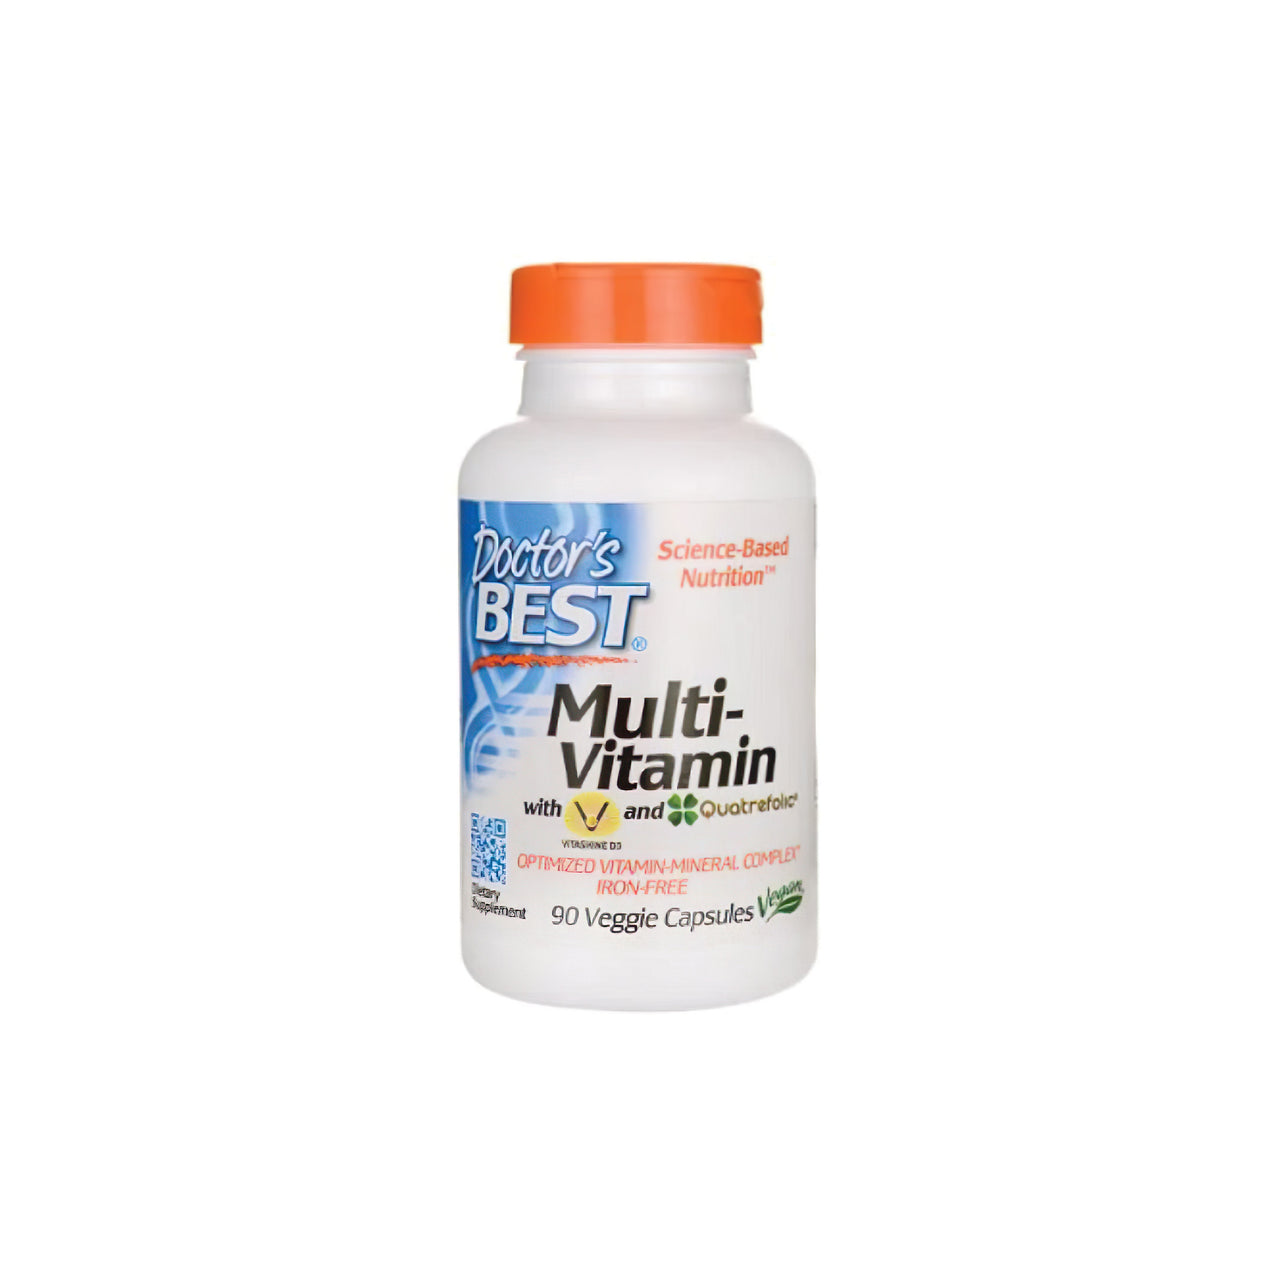 Il miglior Doctor's Best Multivitaminico 90 capsule vegetali per supportare il sistema immunitario, ricco di minerali essenziali, in bella mostra su sfondo bianco.